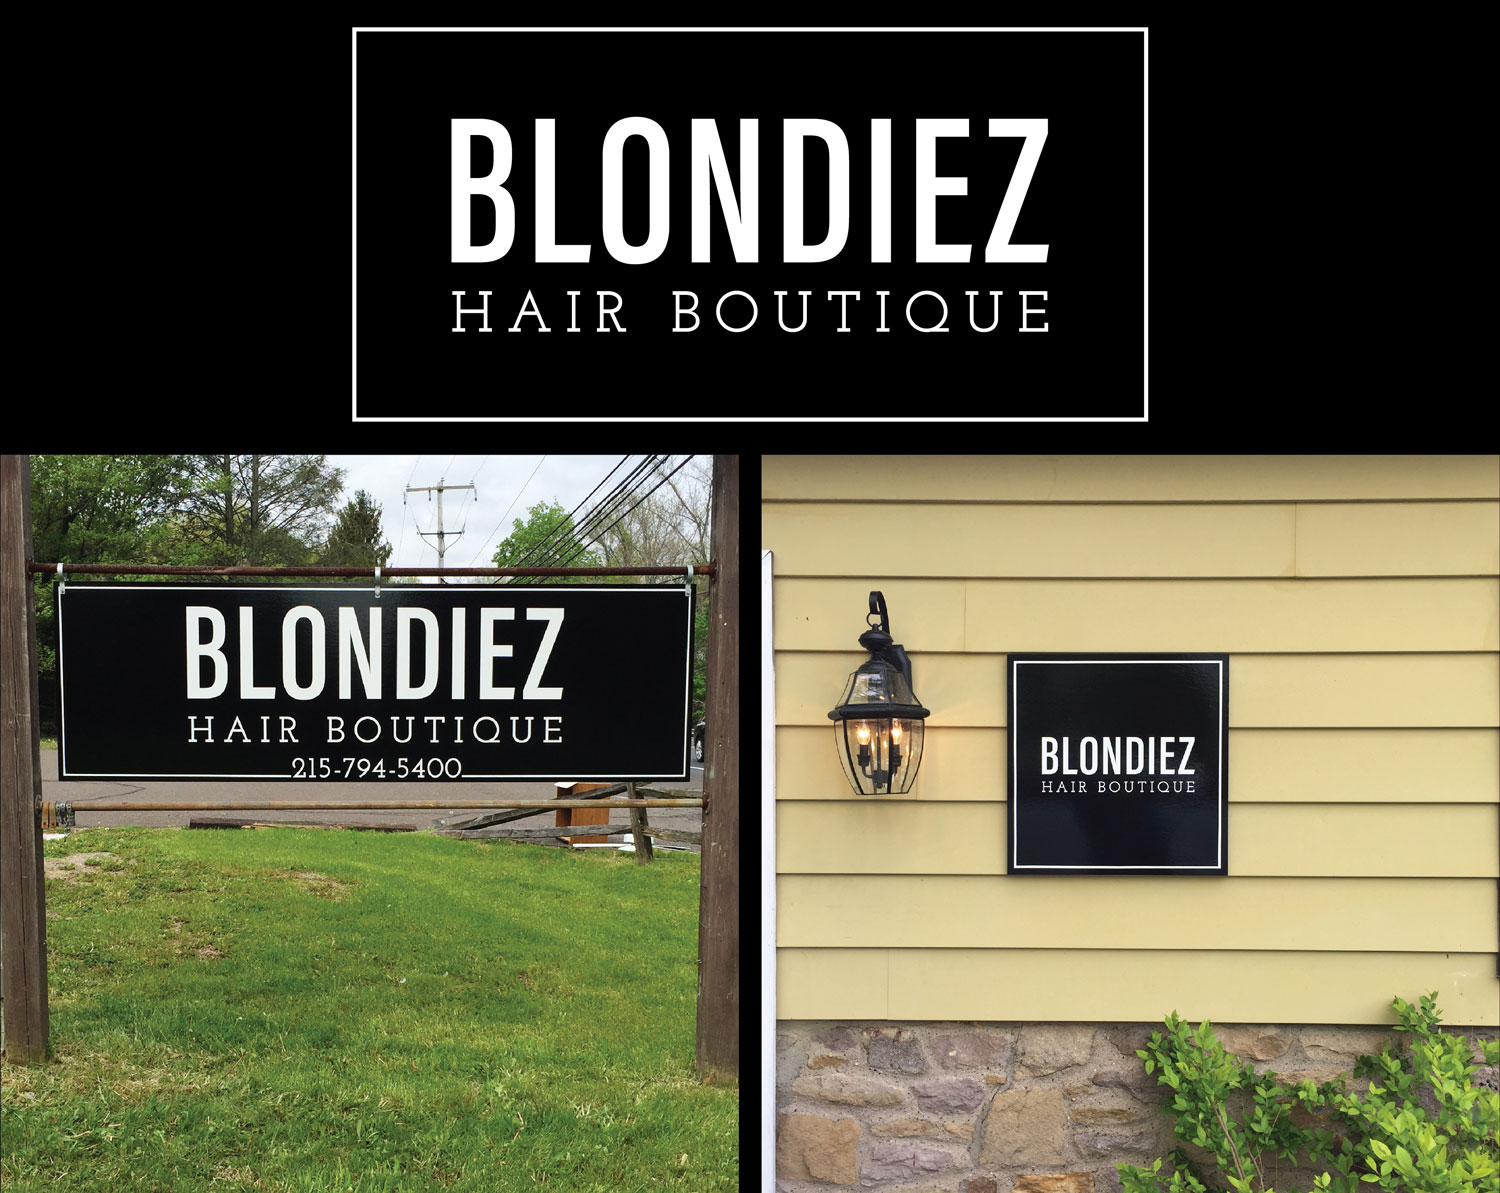 Blondiez Hair Boutique Branding